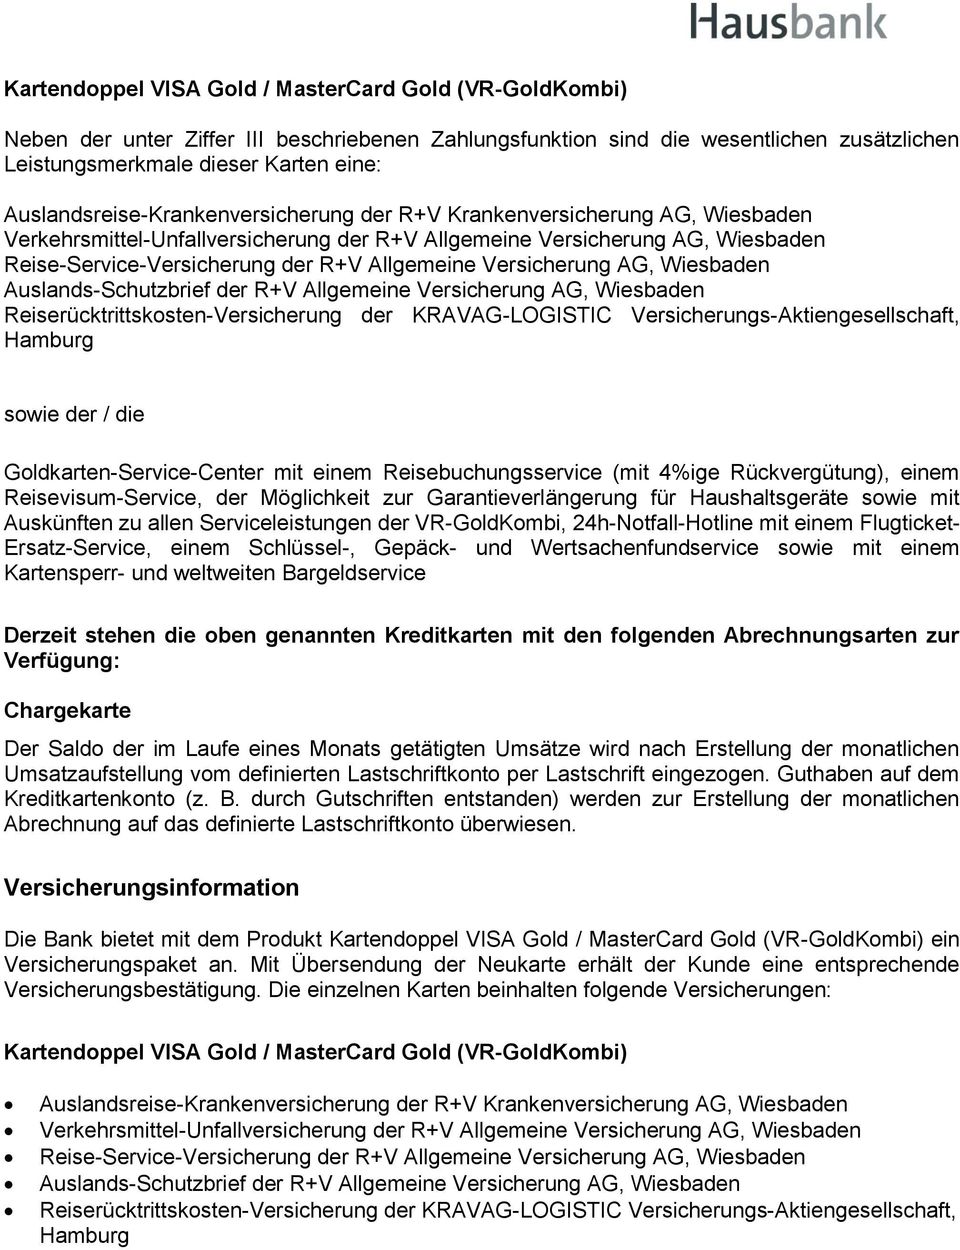 Allgemeine Versicherung AG, Wiesbaden Auslands-Schutzbrief der R+V Allgemeine Versicherung AG, Wiesbaden Reiserücktrittskosten-Versicherung der KRAVAG-LOGISTIC Versicherungs-Aktiengesellschaft,